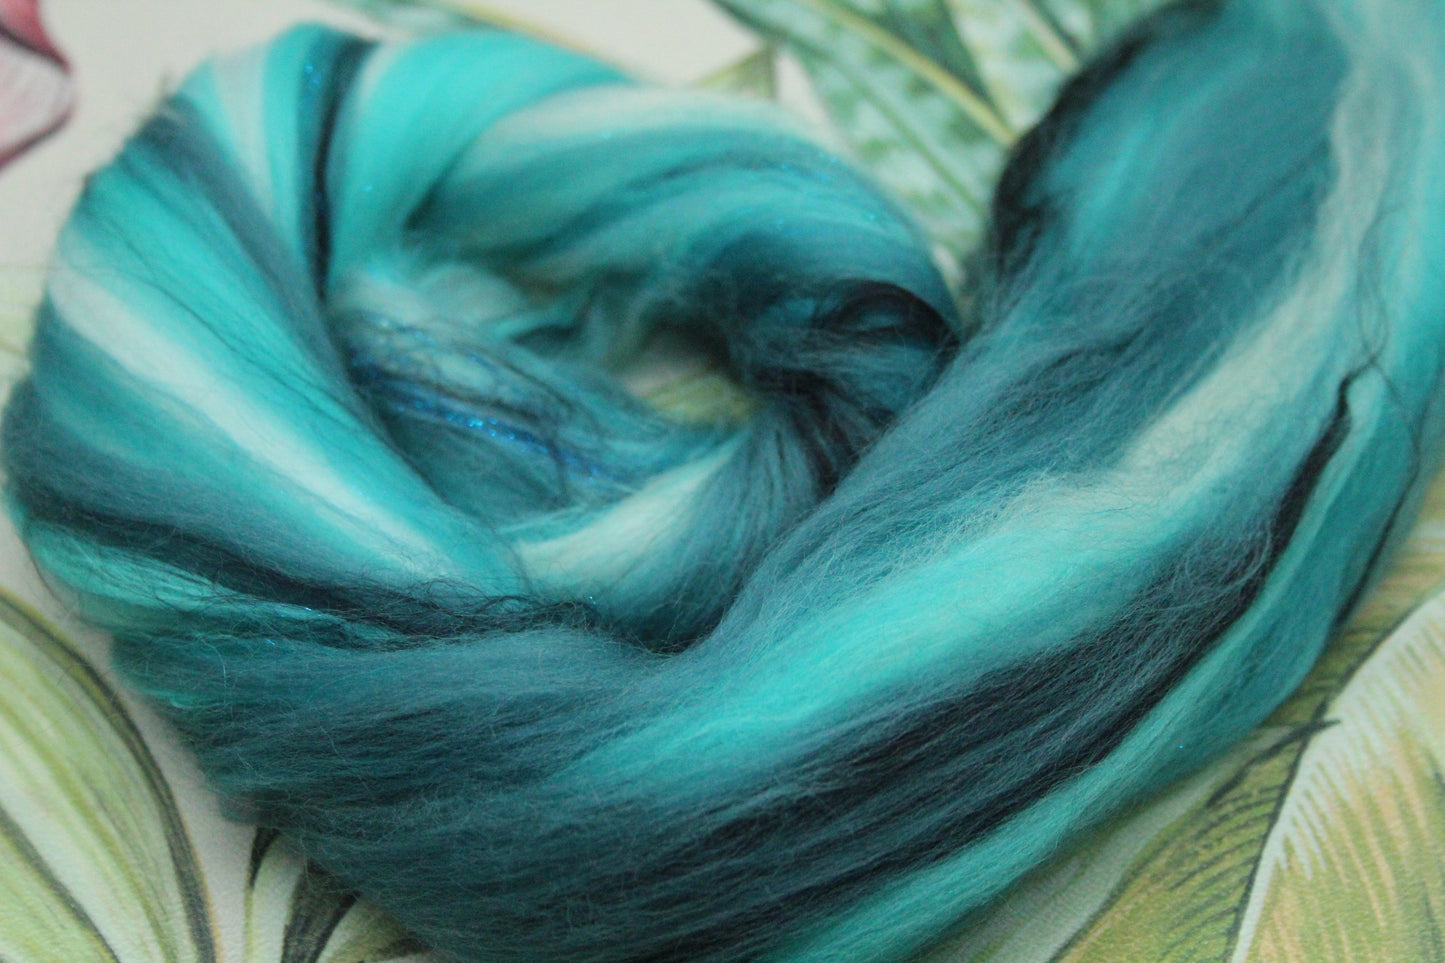 Wool Blend - Turquoise White - 16 grams / 0.5 oz  - Fibre for felting, weaving or spinning